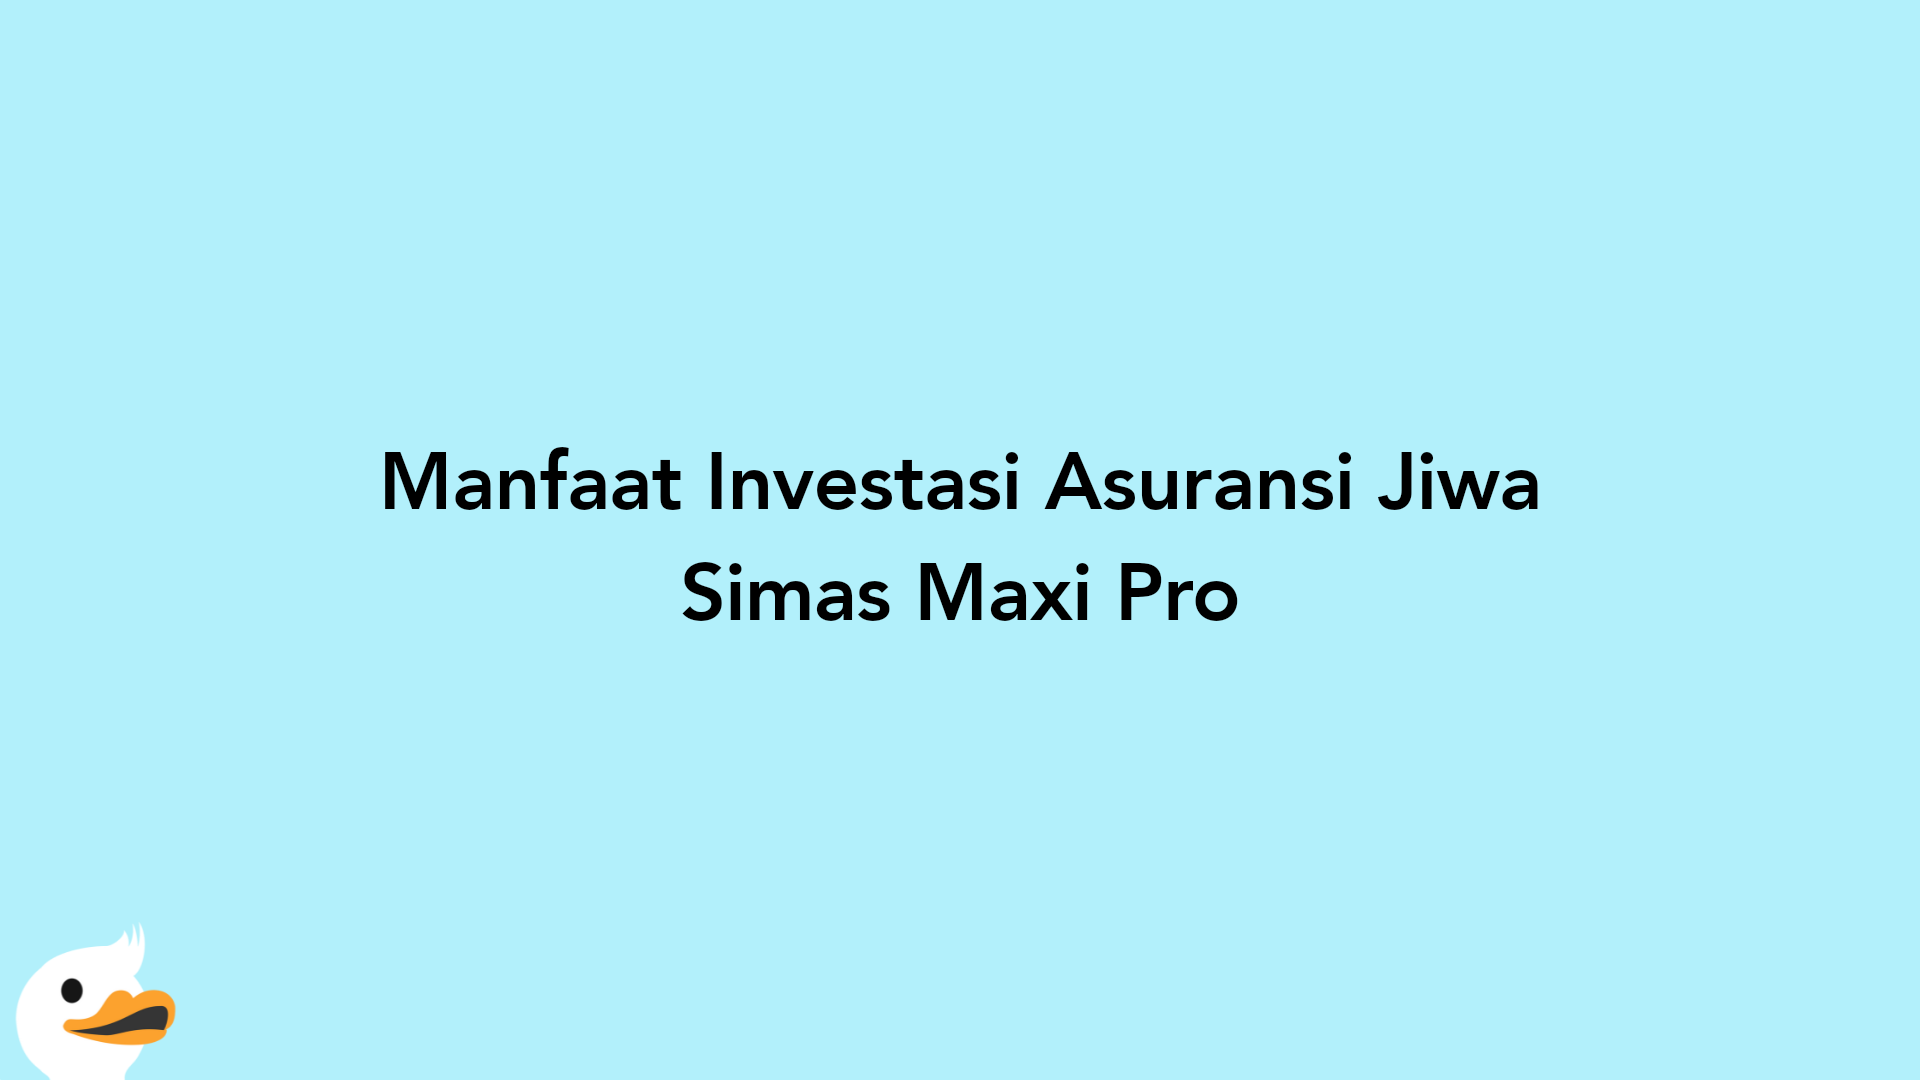 Manfaat Investasi Asuransi Jiwa Simas Maxi Pro